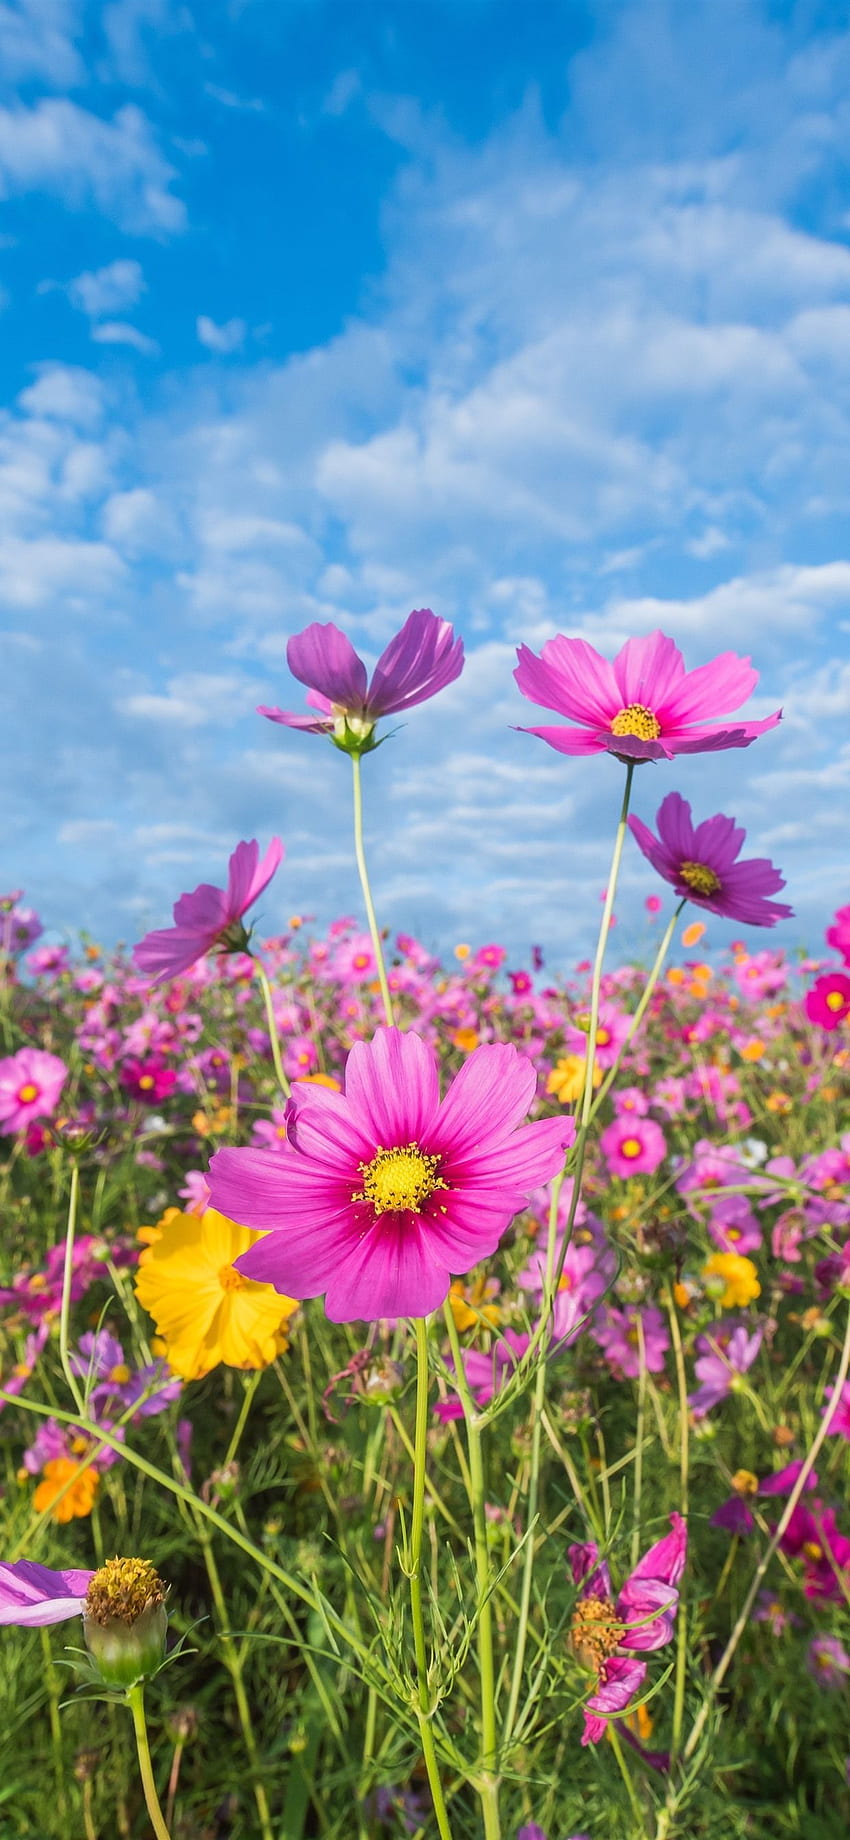 Bunga merah muda, kosmos, padang rumput, musim panas iPhone XS Max, Bunga Musim Panas wallpaper ponsel HD